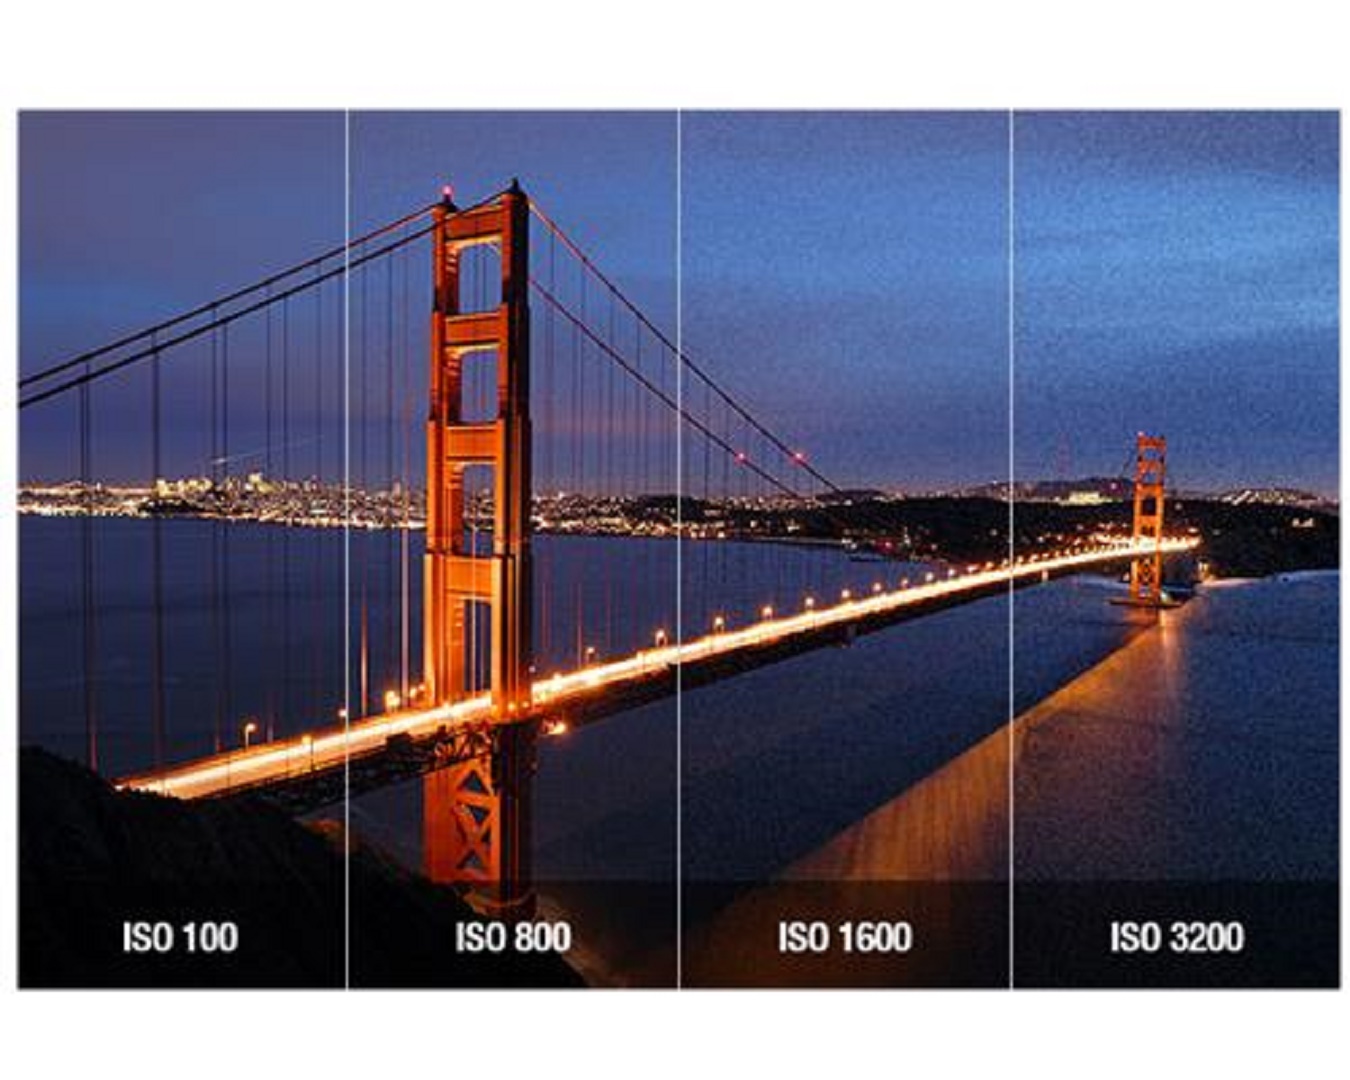 Nâng cao kỹ thuật nhiếp ảnh với mối quan hệ giữa ba yếu tố ISO, khẩu độ, tốc độ khi phơi sáng